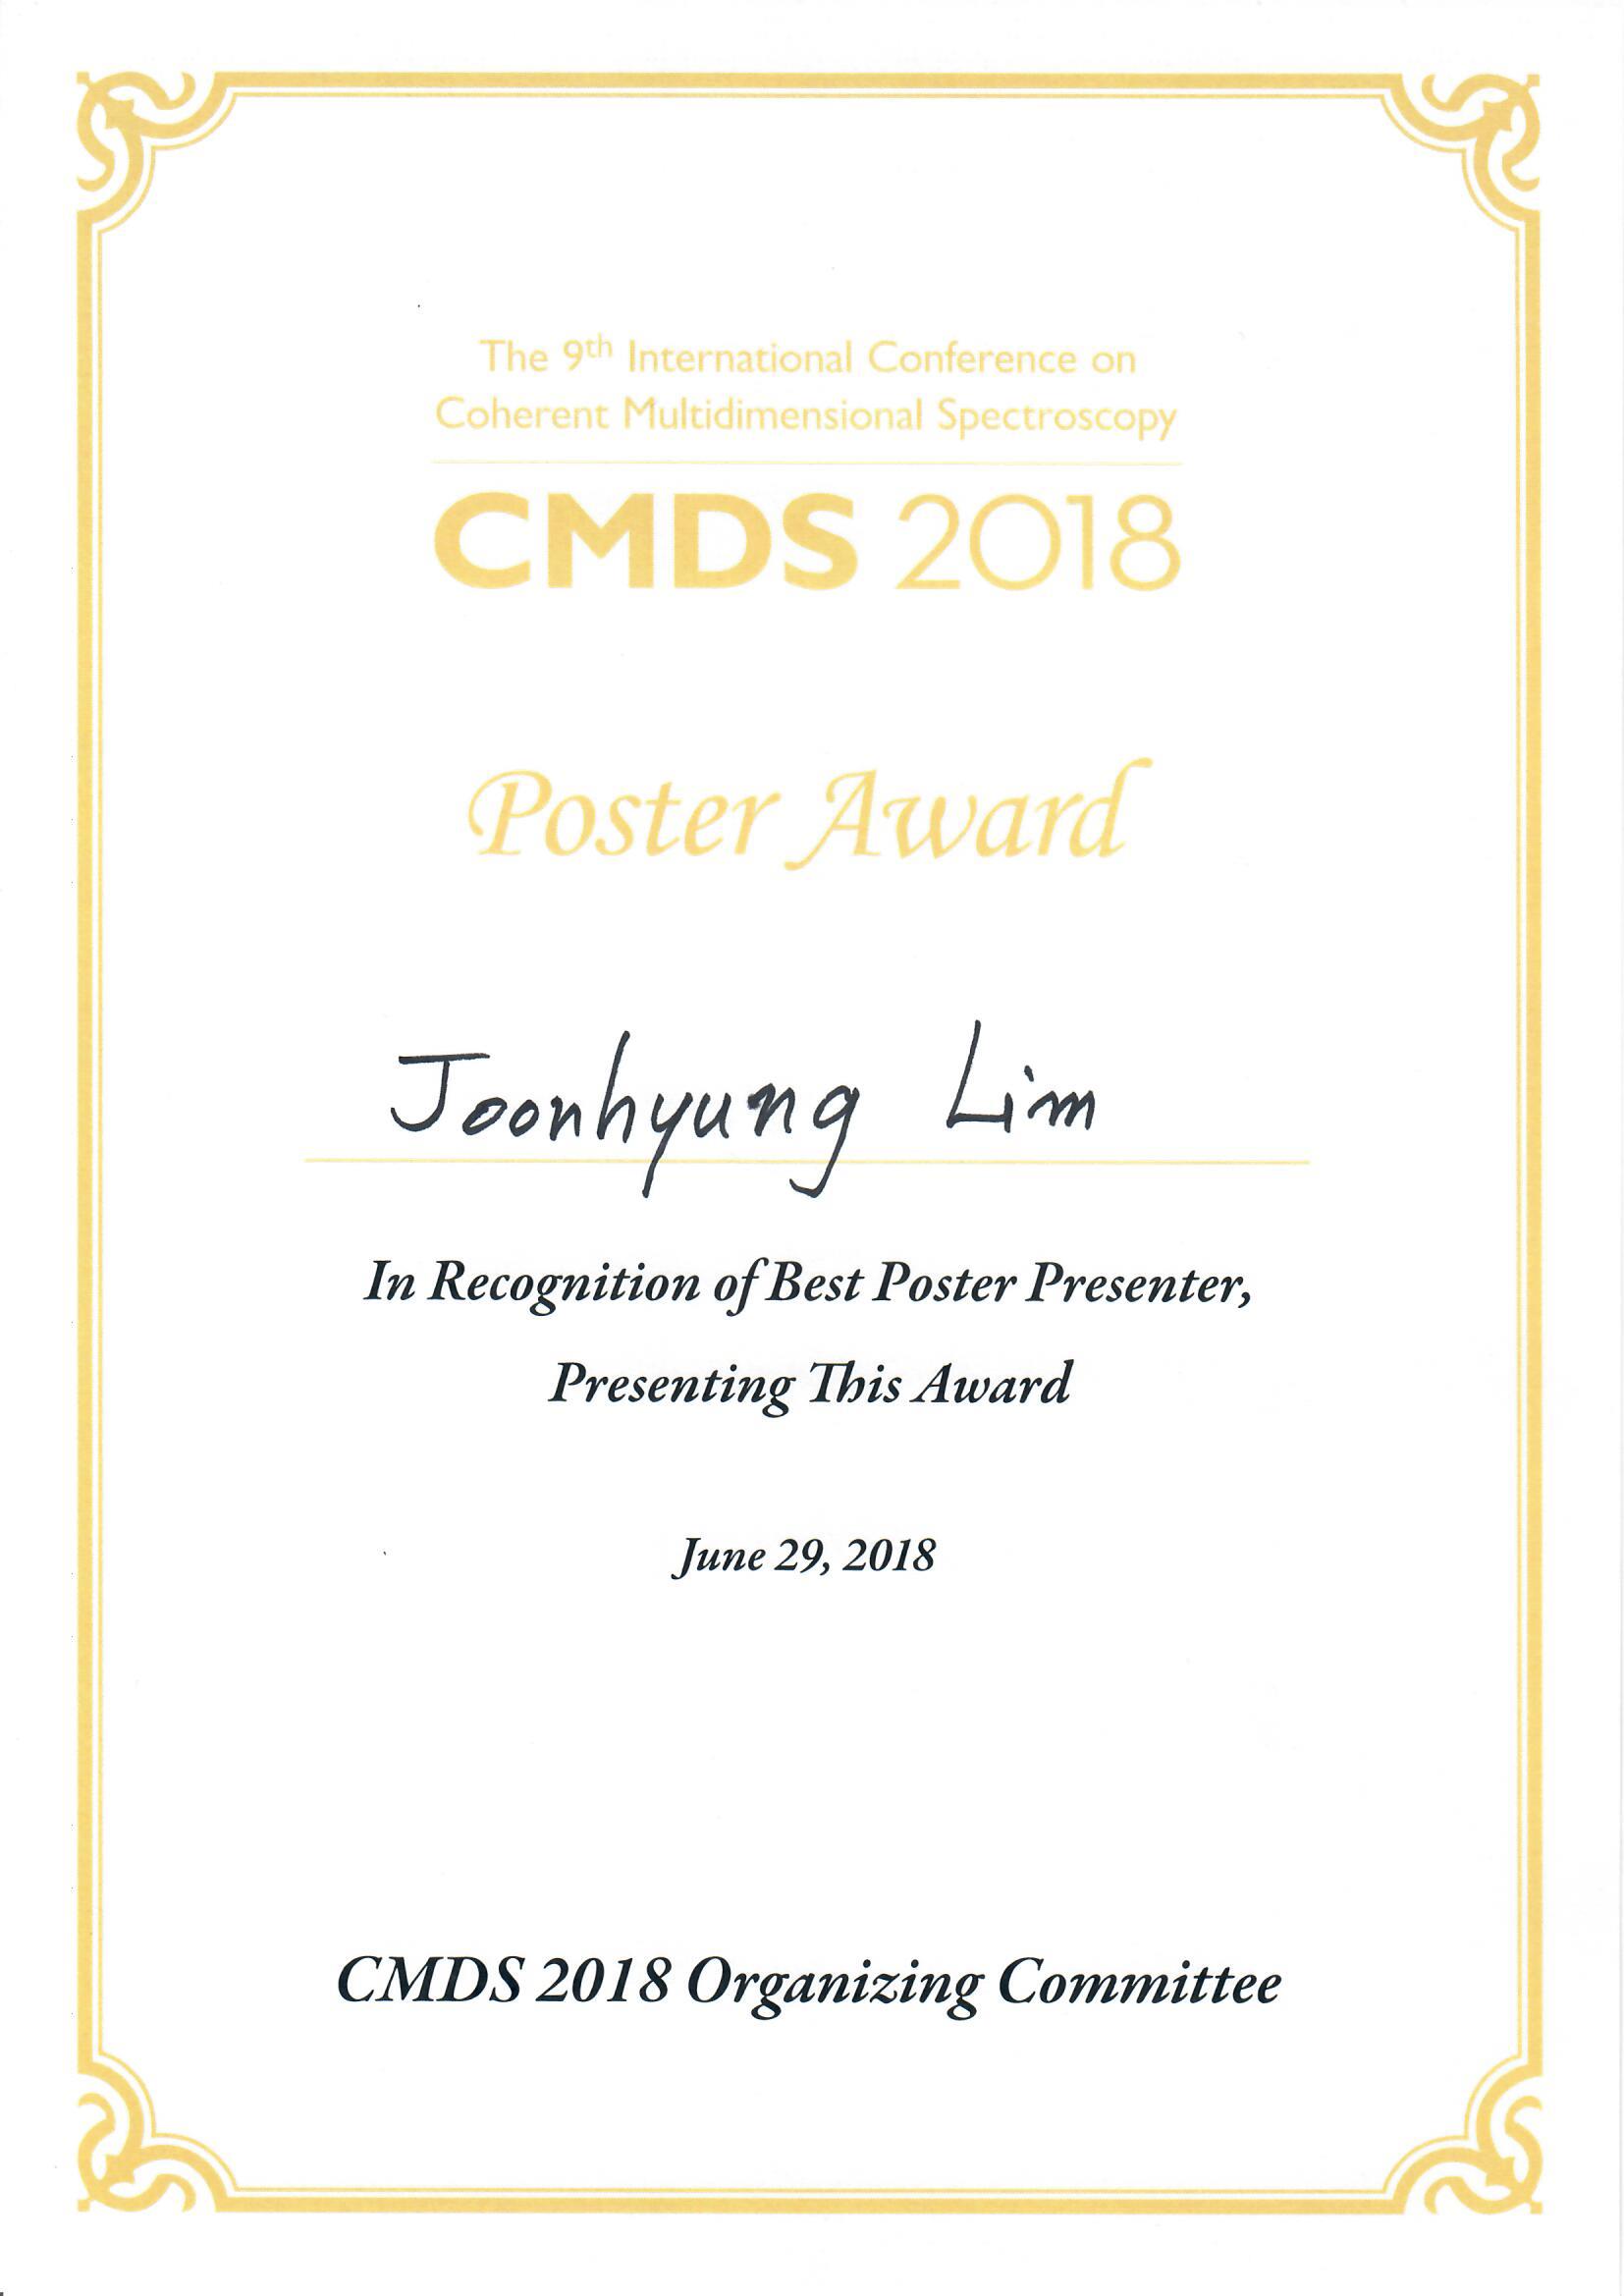 Best Poster Award in CMDS 2018! (Joonhyung Lim) 사진